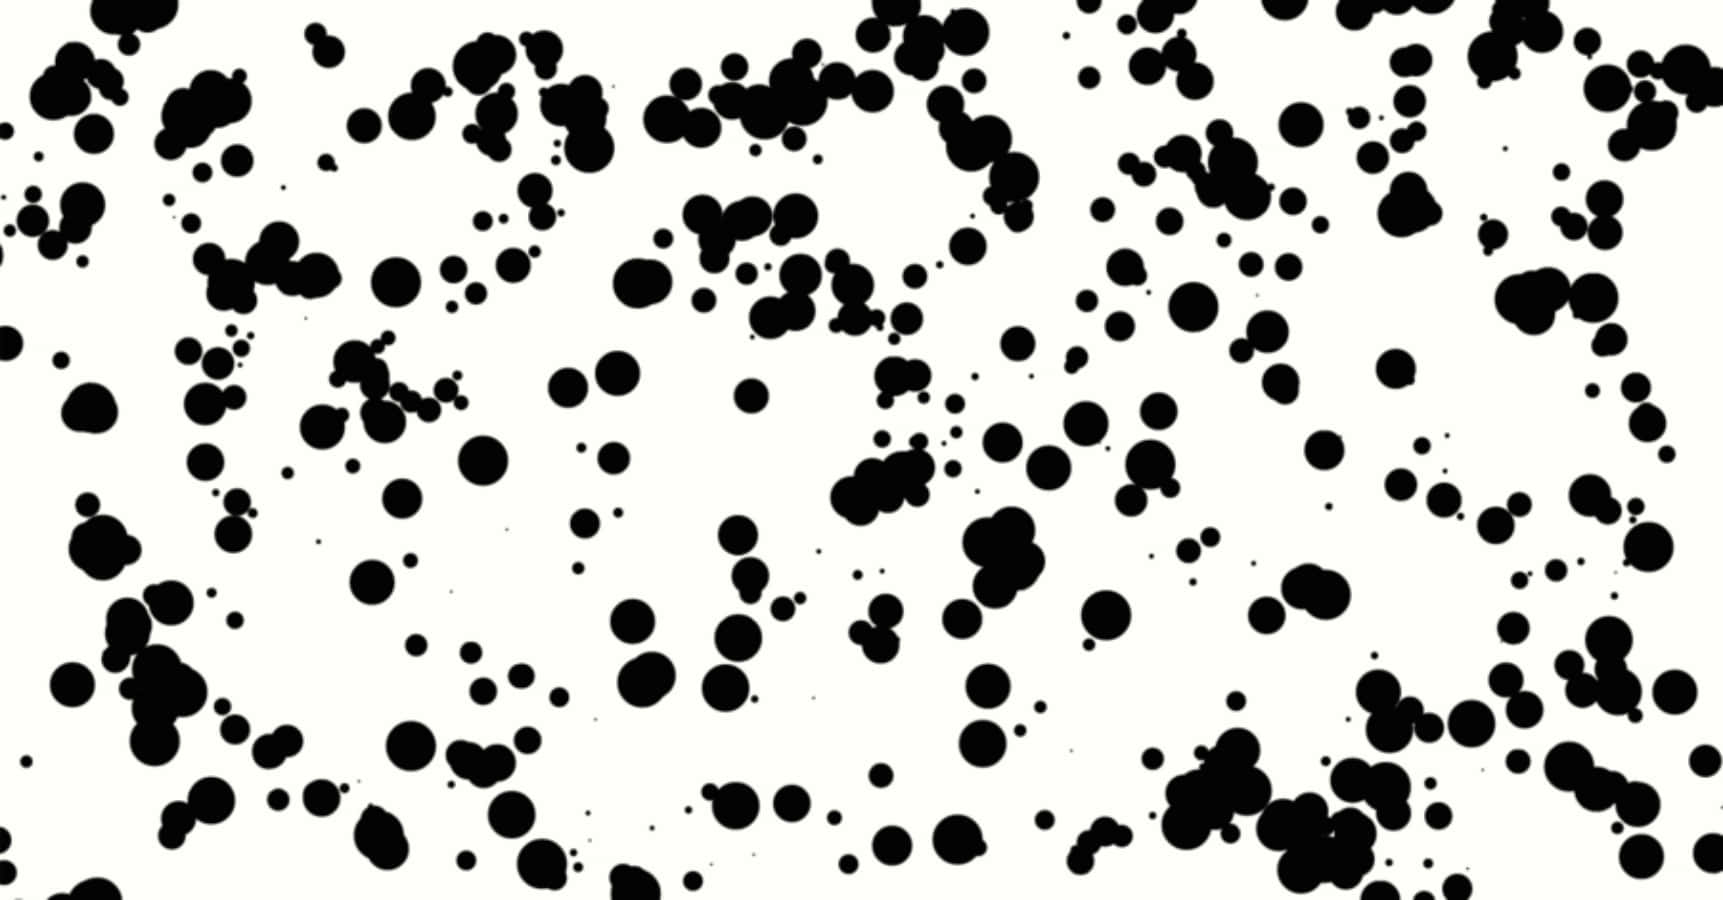 Dalmatian Print Black Ink Splatter Wallpaper